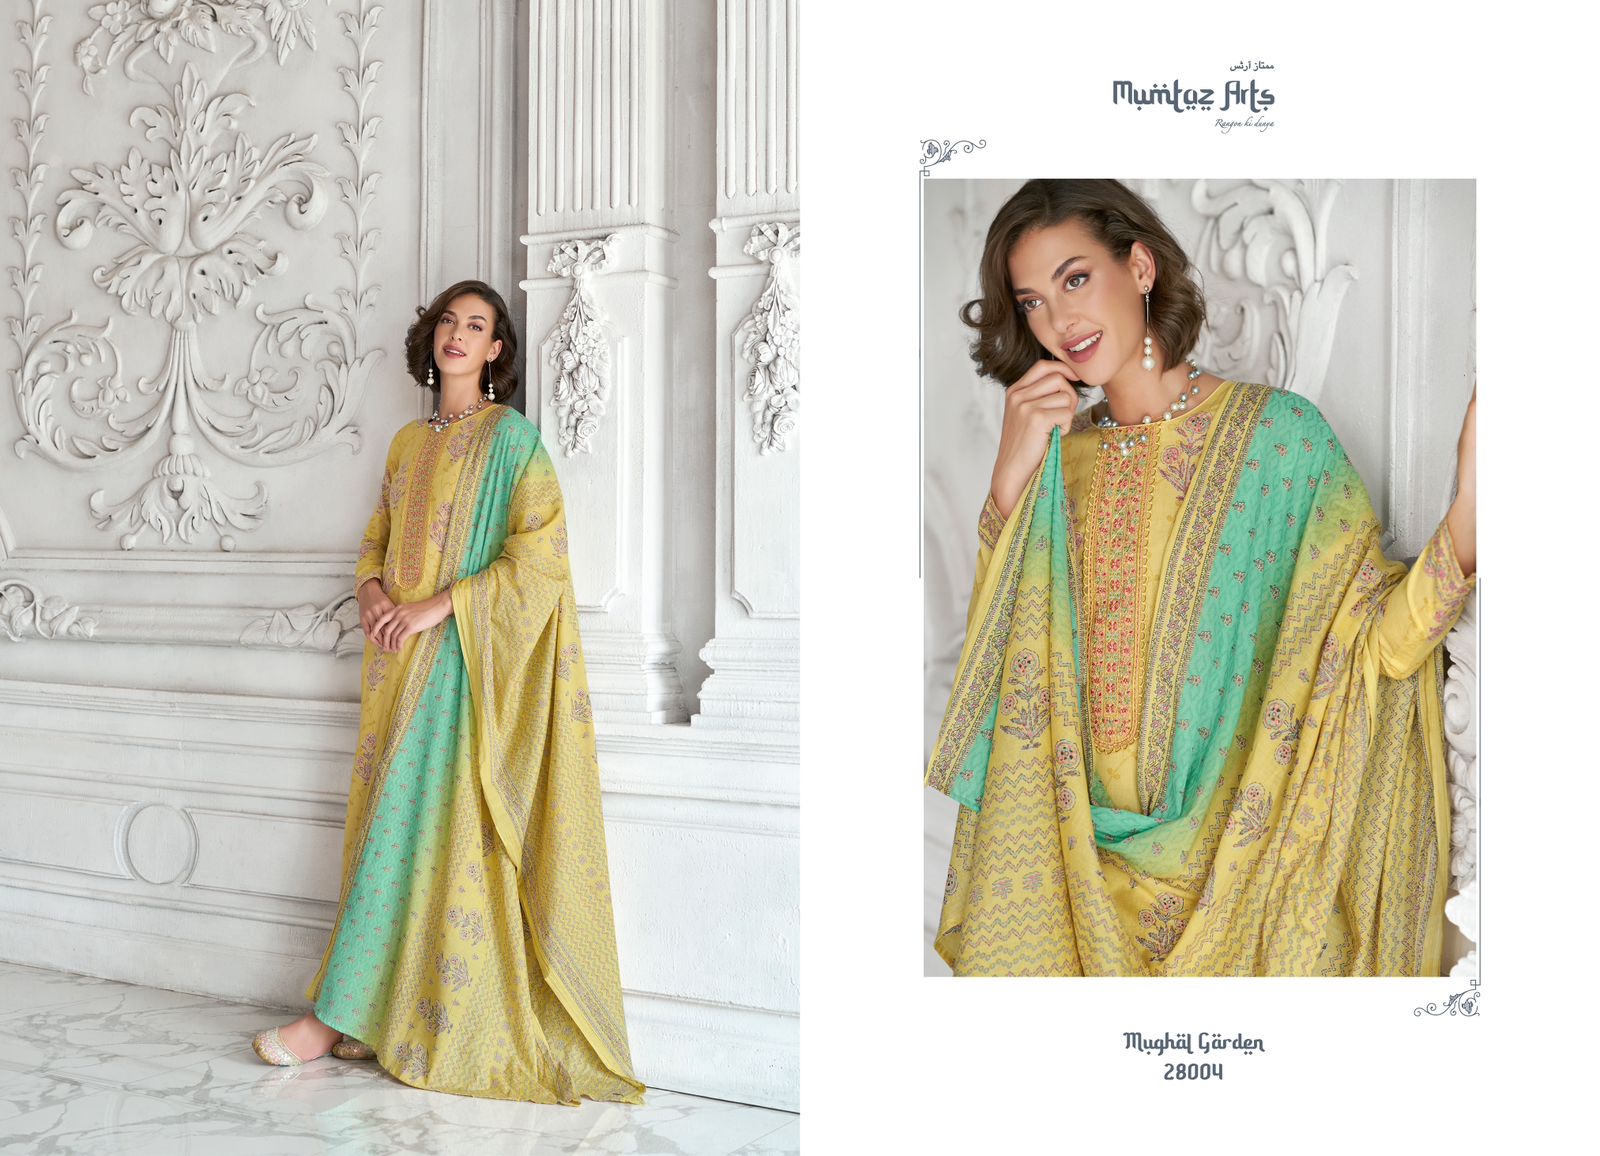 mumtaz art mughal garden camric decent embroidery look salwar suit catalog